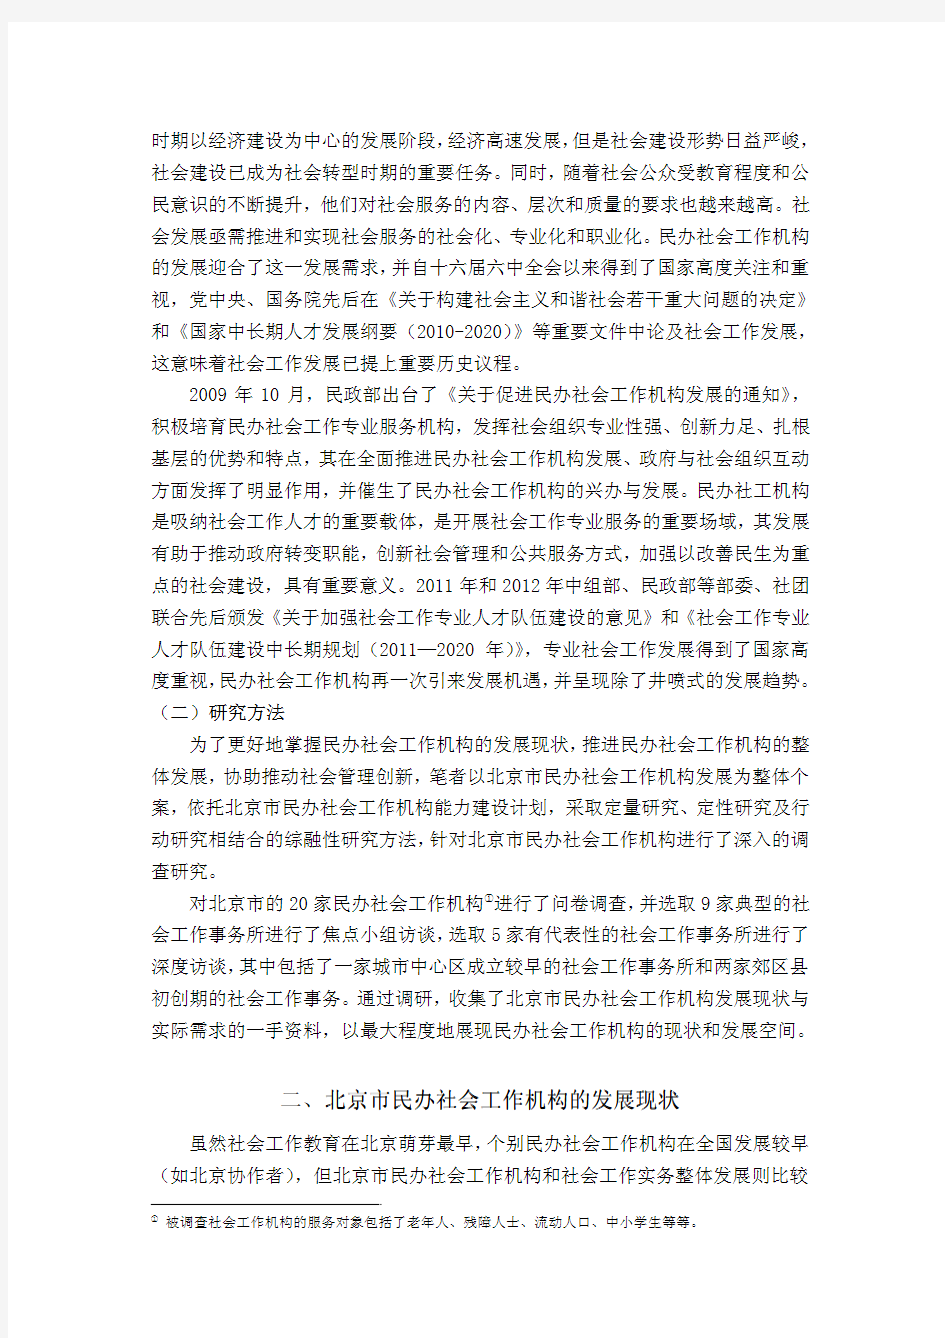 民办社会工作机构的发展与反思——基于北京市民办社会工作机构发展现状与发展障碍的调查研究